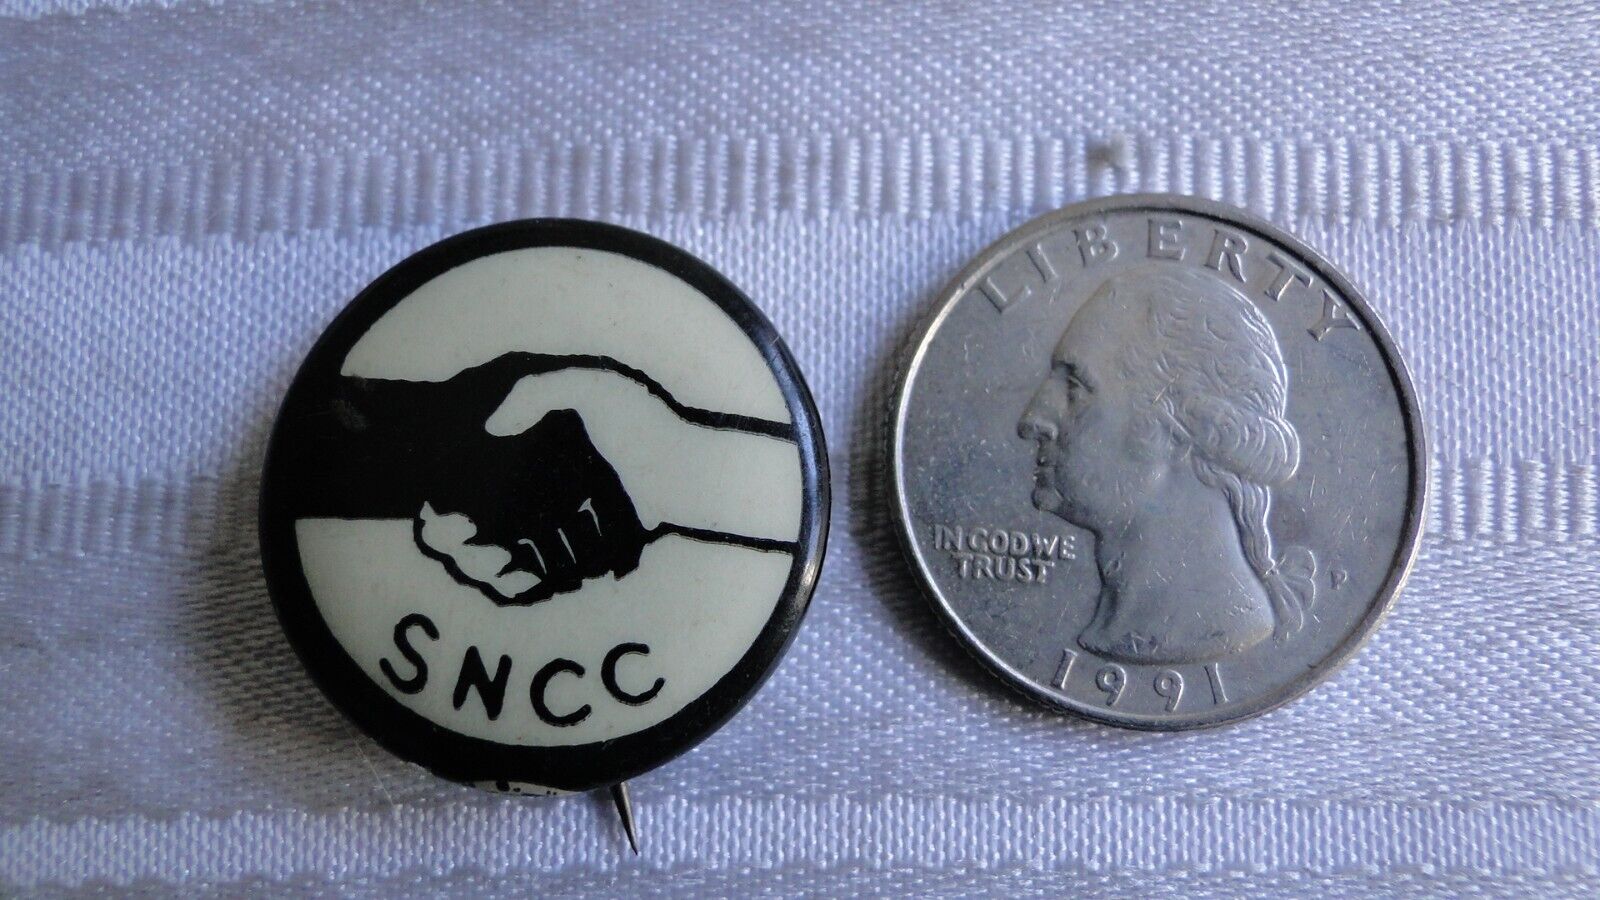 SNCC 1st Handshake Pin 1960 Segregation Sit Original Celluloid Pinback